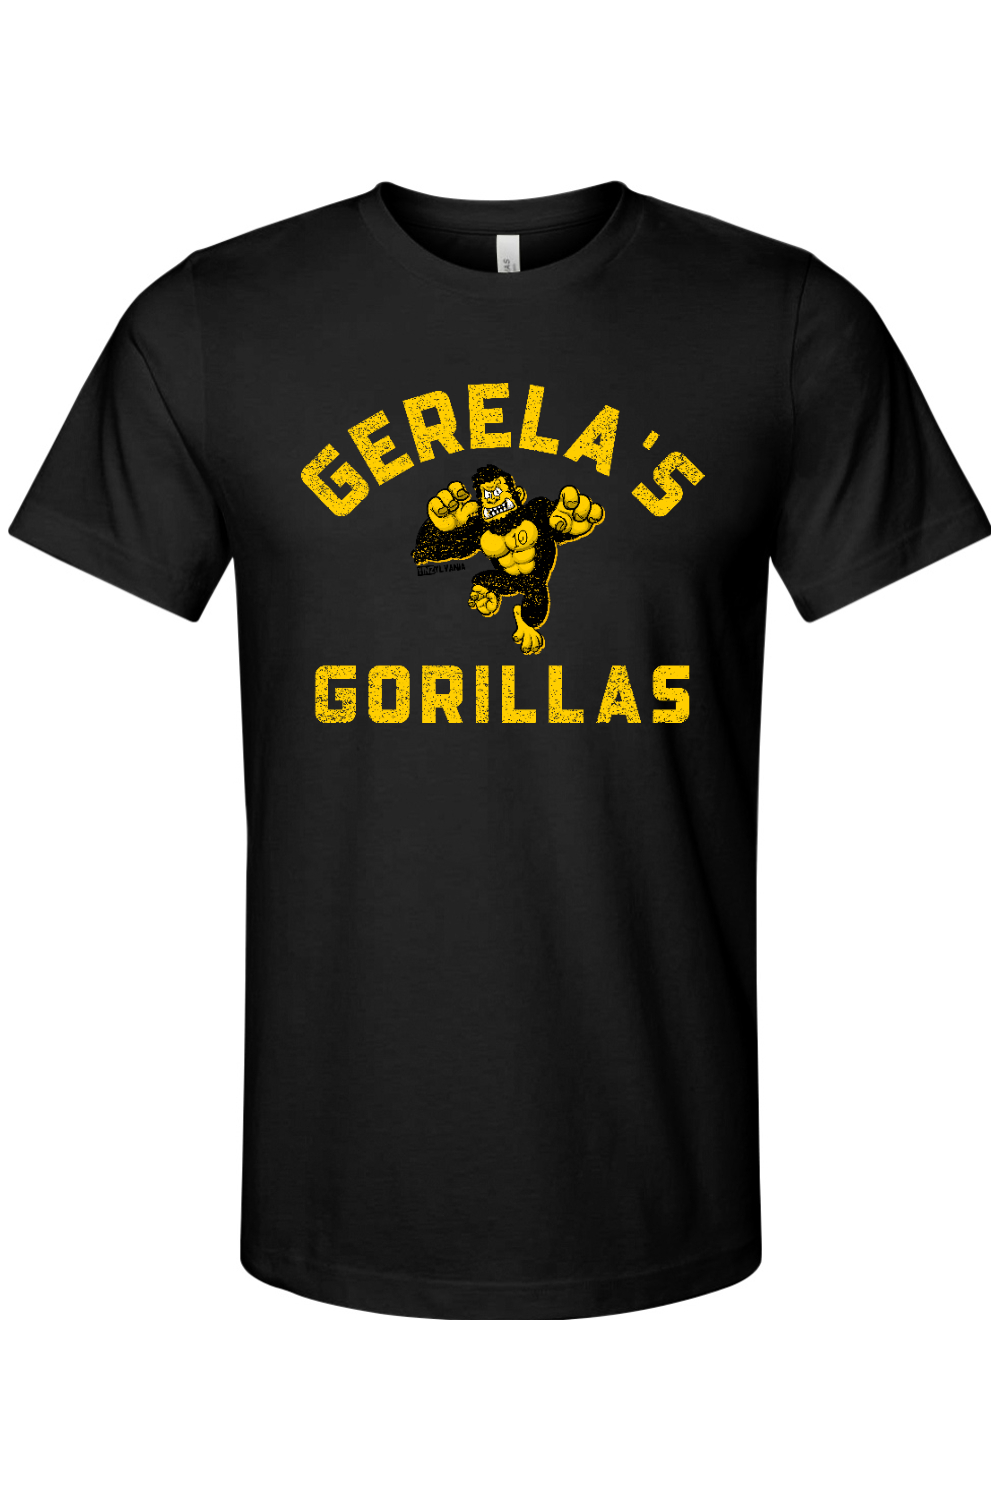 Gerela's Gorillas - Bella + Canvas Jersey Tee - Yinzylvania